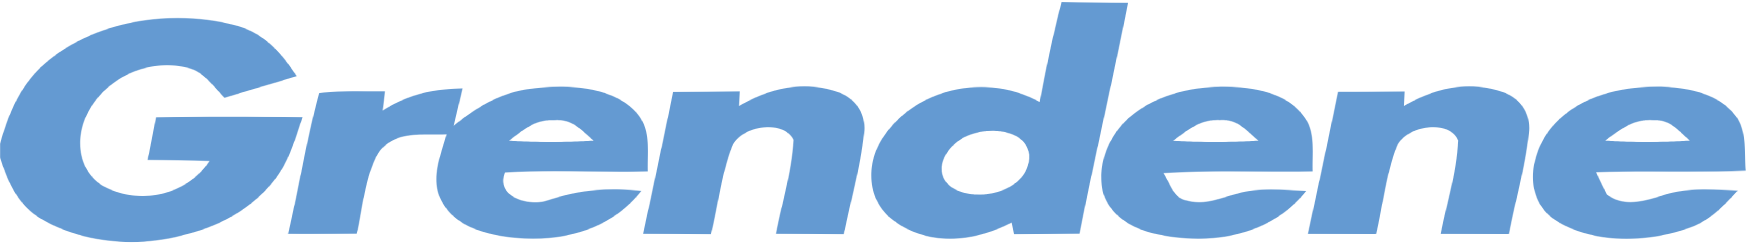 Grendene logo large (transparent PNG)